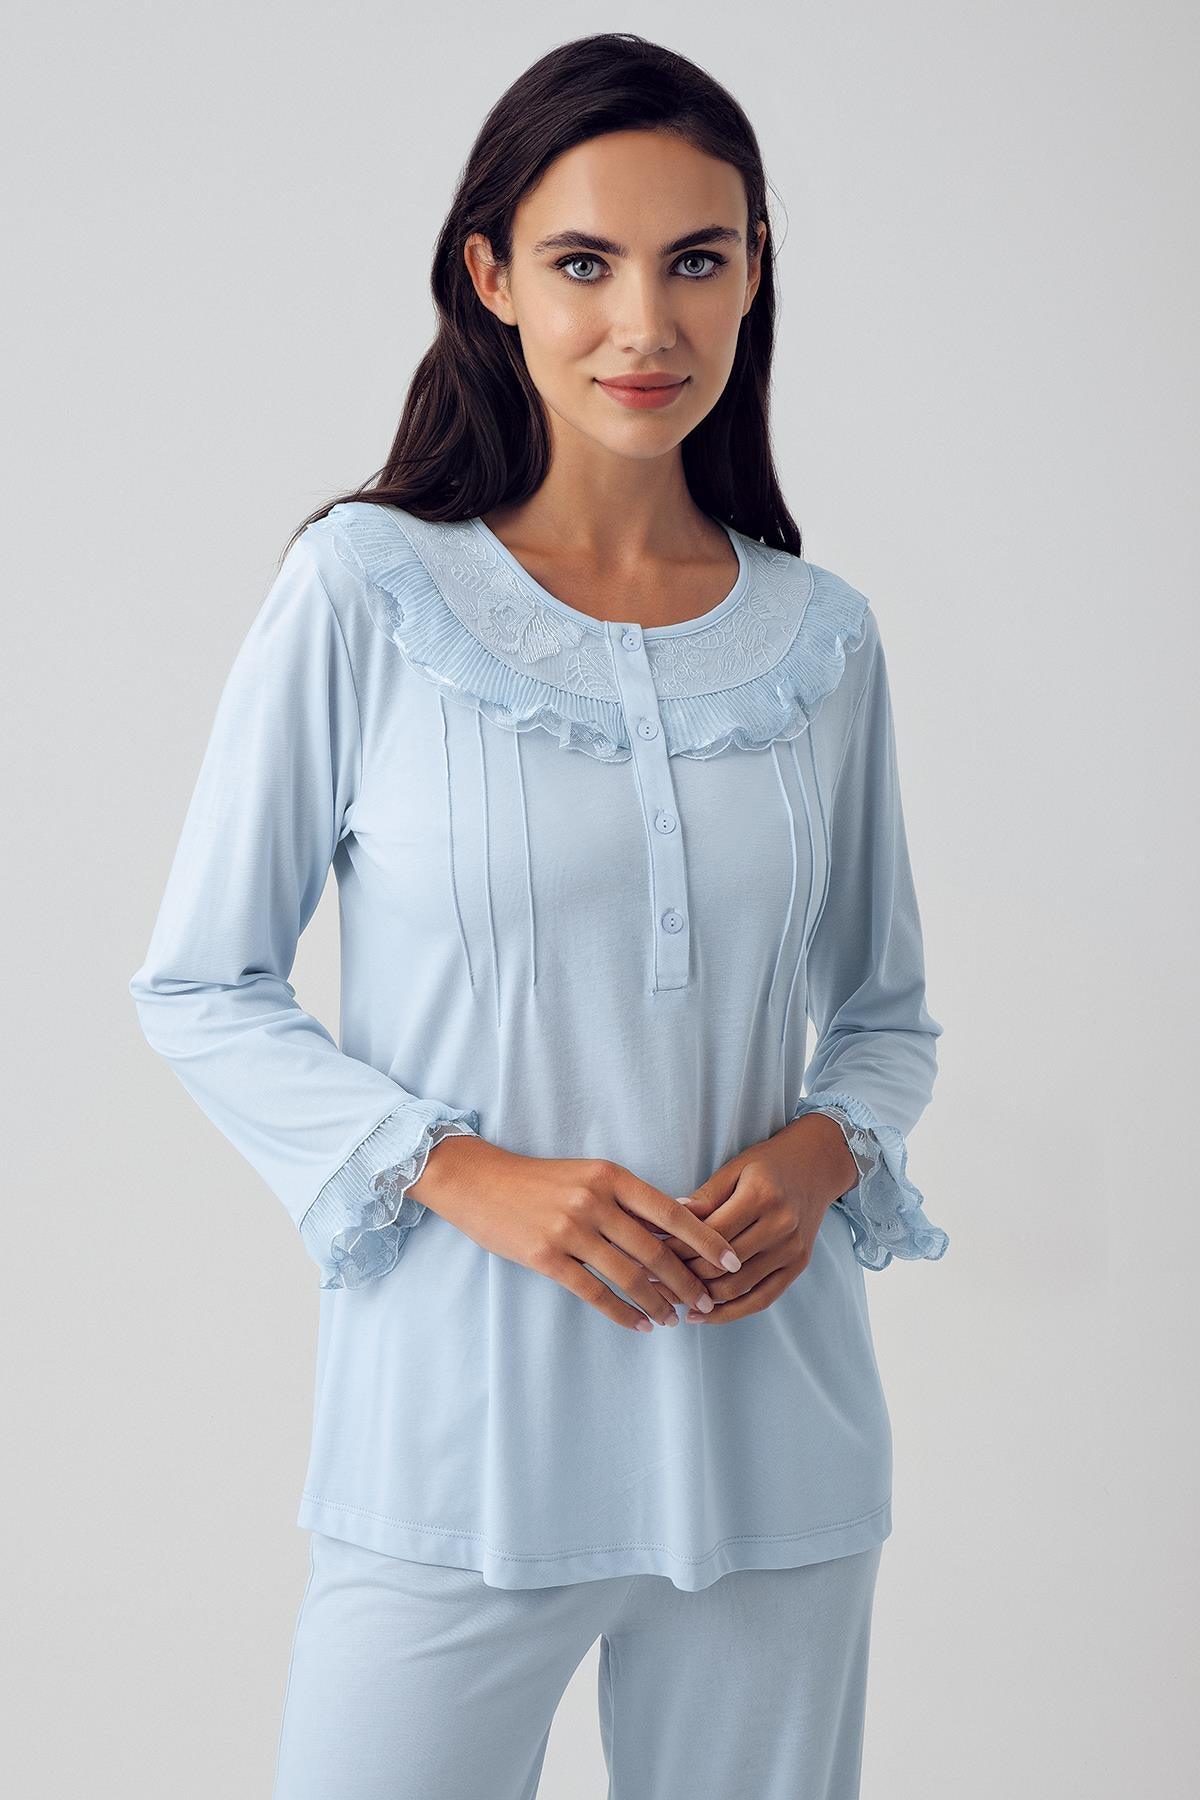 Kadın Dantelli Düğmeli Esnek Viskon Pijama Takımı 15210 - Artış Collection